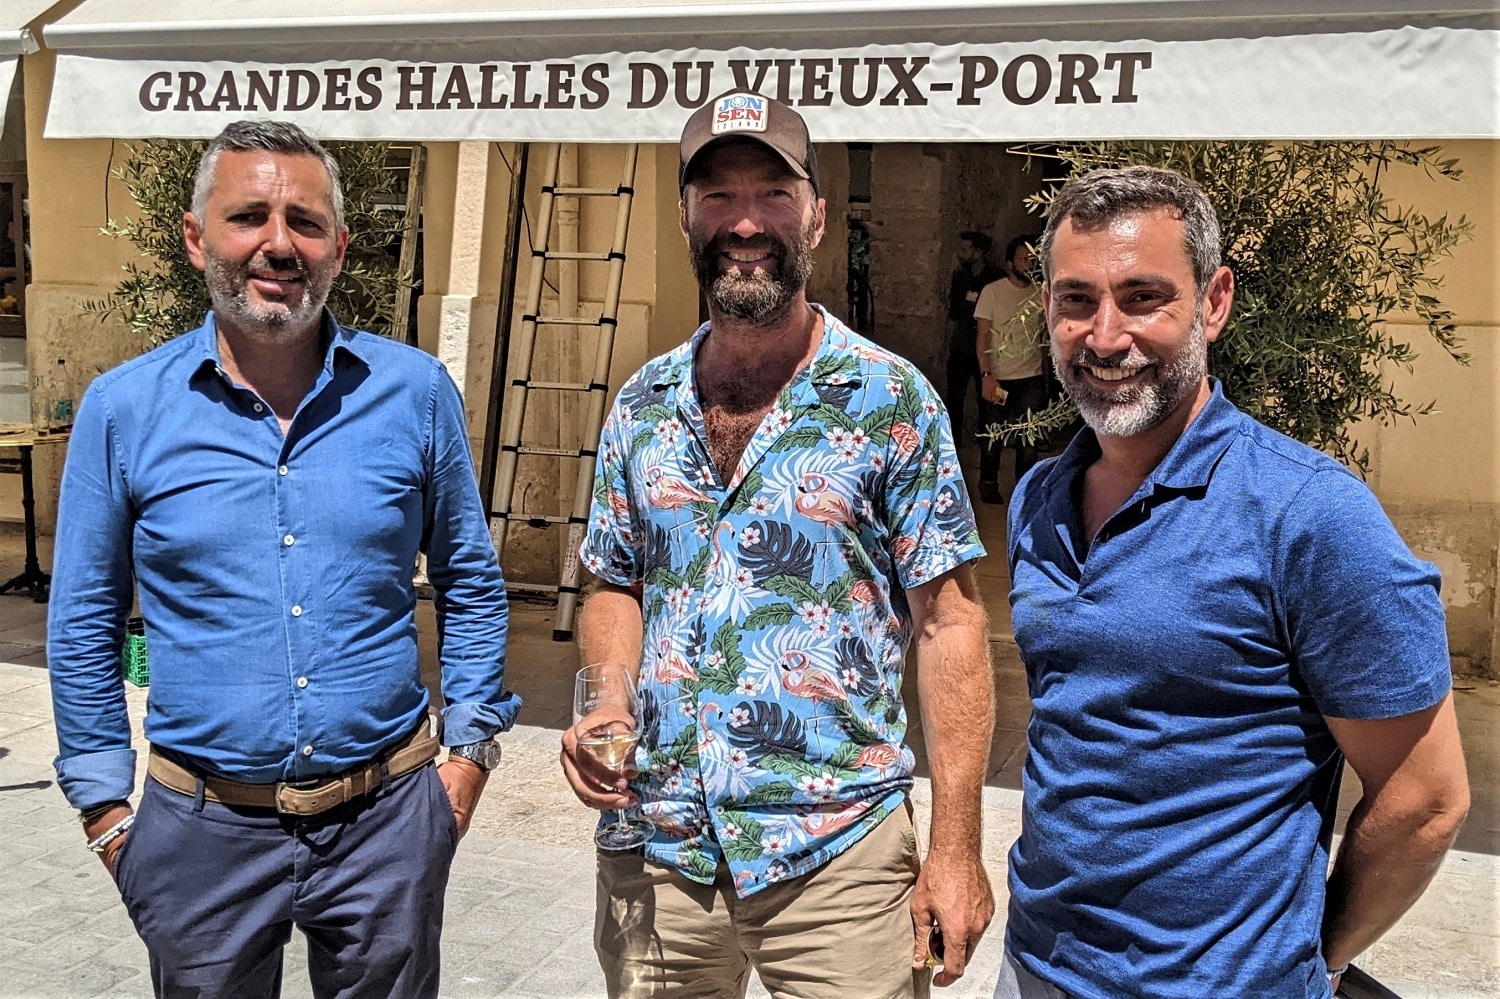 halles, Vidéo | Les Grandes Halles du Vieux-Port ont ouvert à Marseille, Made in Marseille